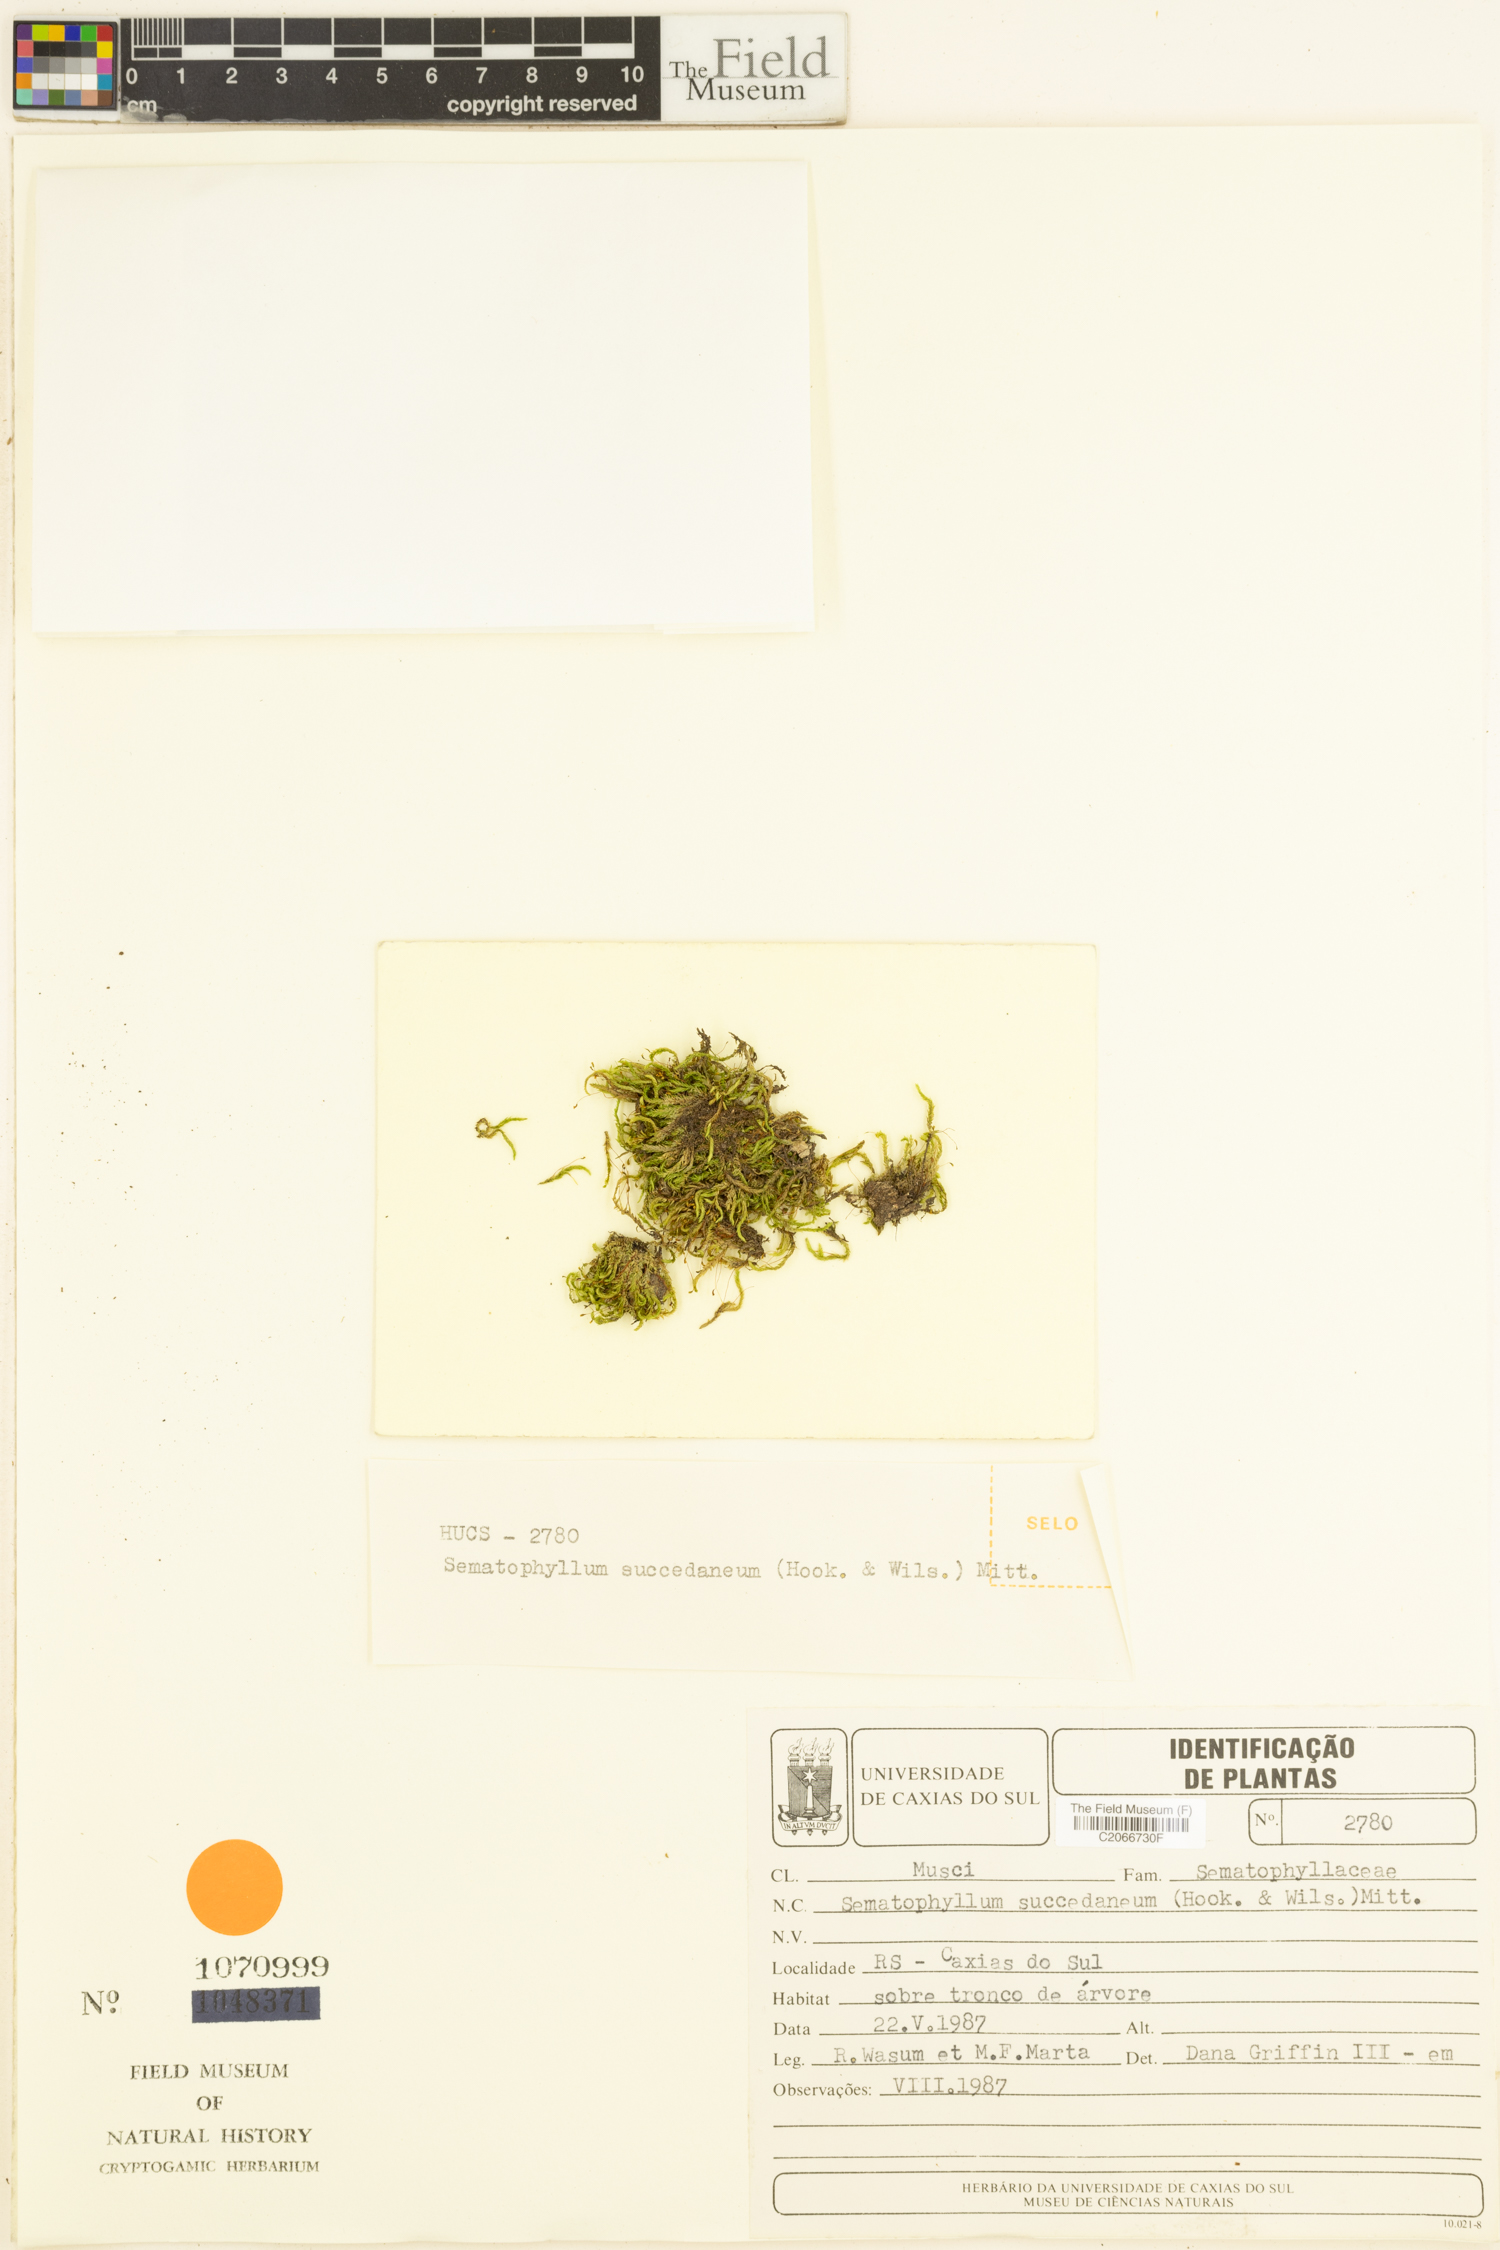 Sematophyllum succedaneum image